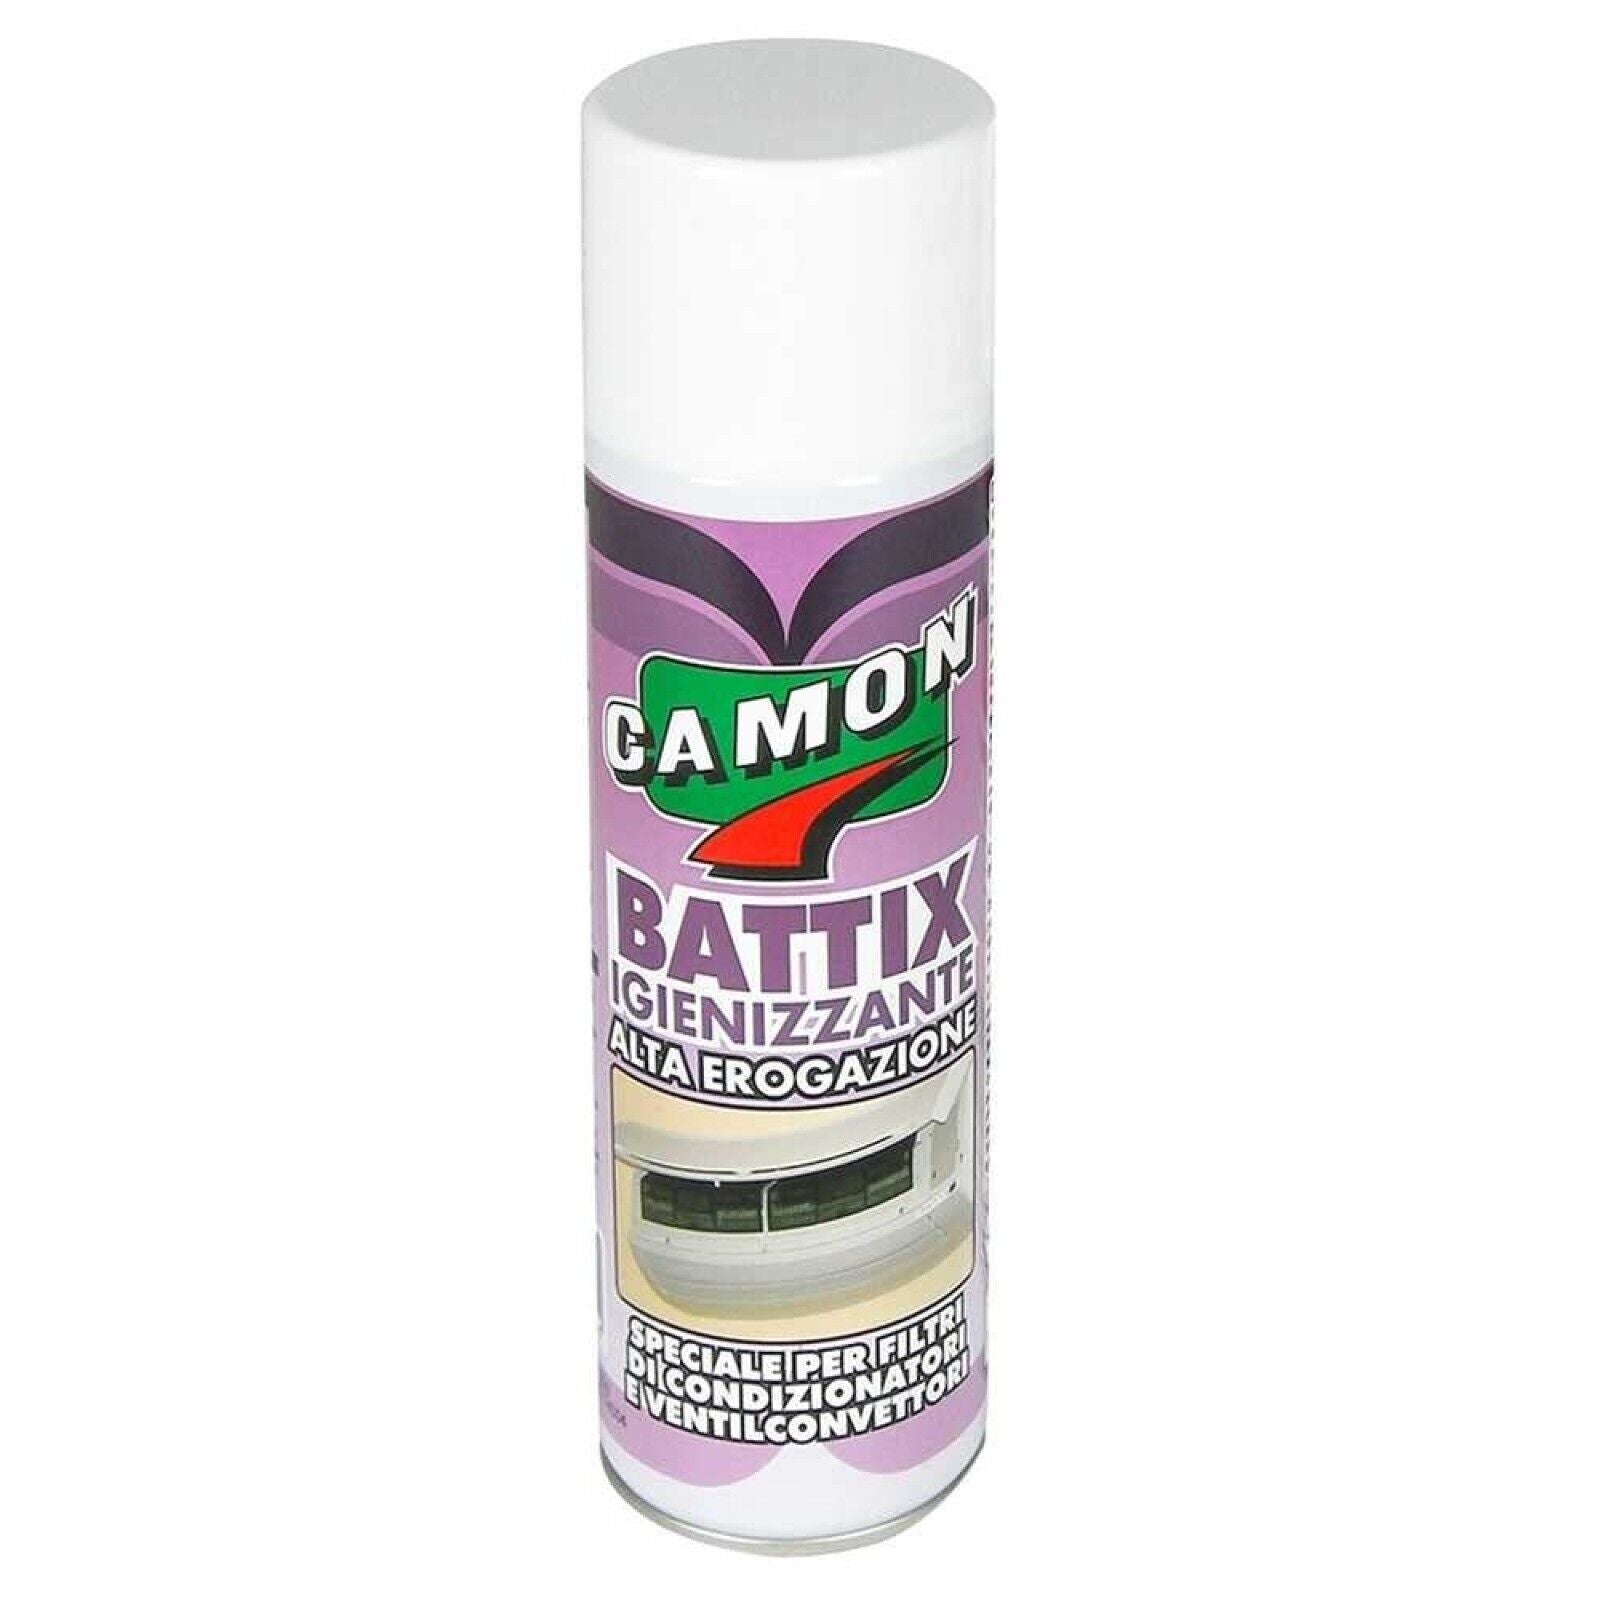 Igienizzante spray Camon Battix per climatizzatori